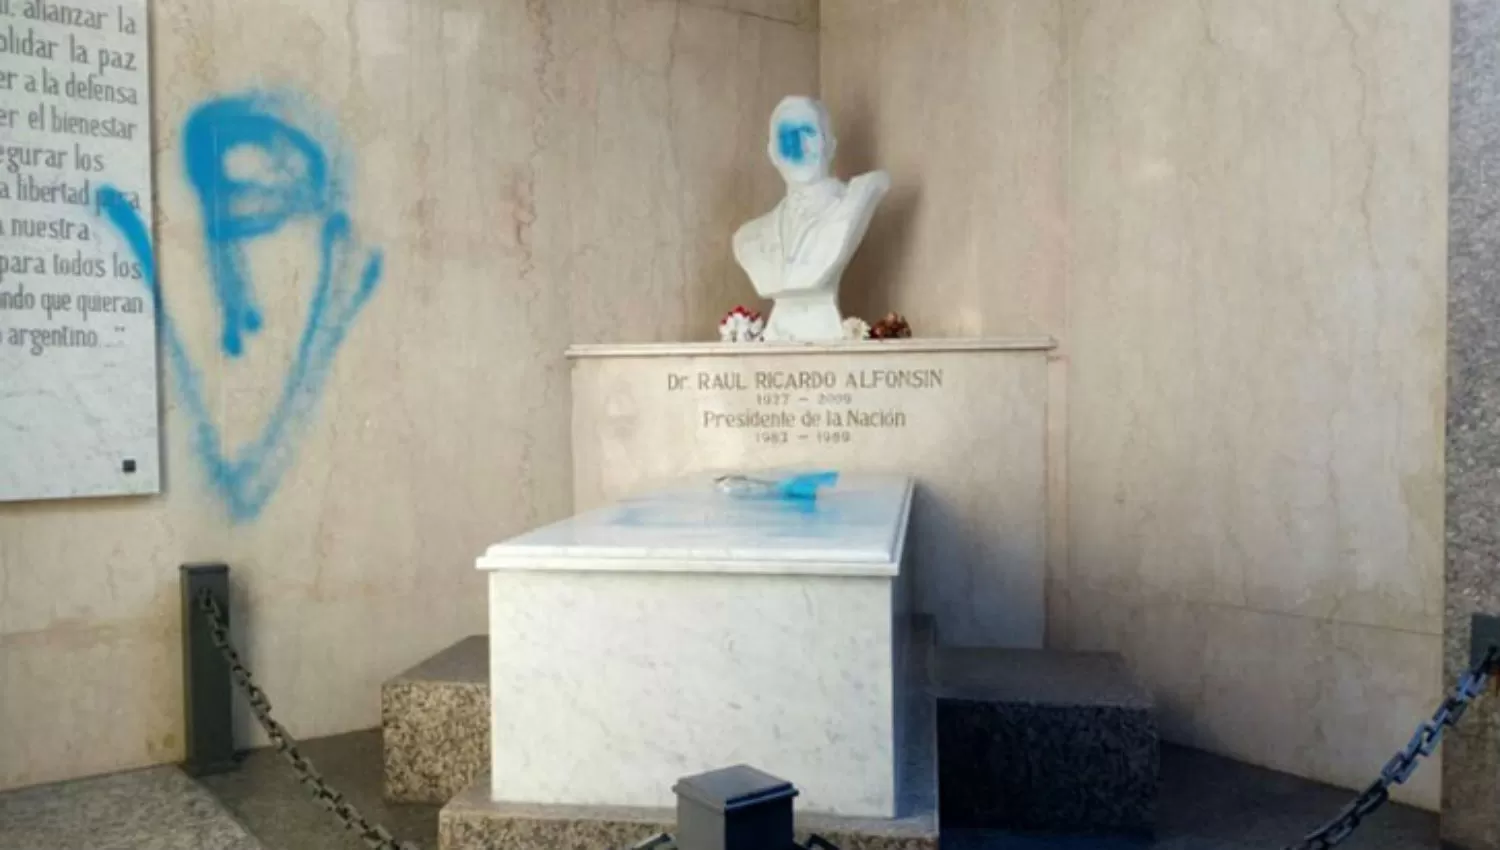 ESCRACHE. Ricardo Alfonsín denunció a través de la red social Twitter que el mausoleo de su padre Raúl fue vandalizado con pintadas.

